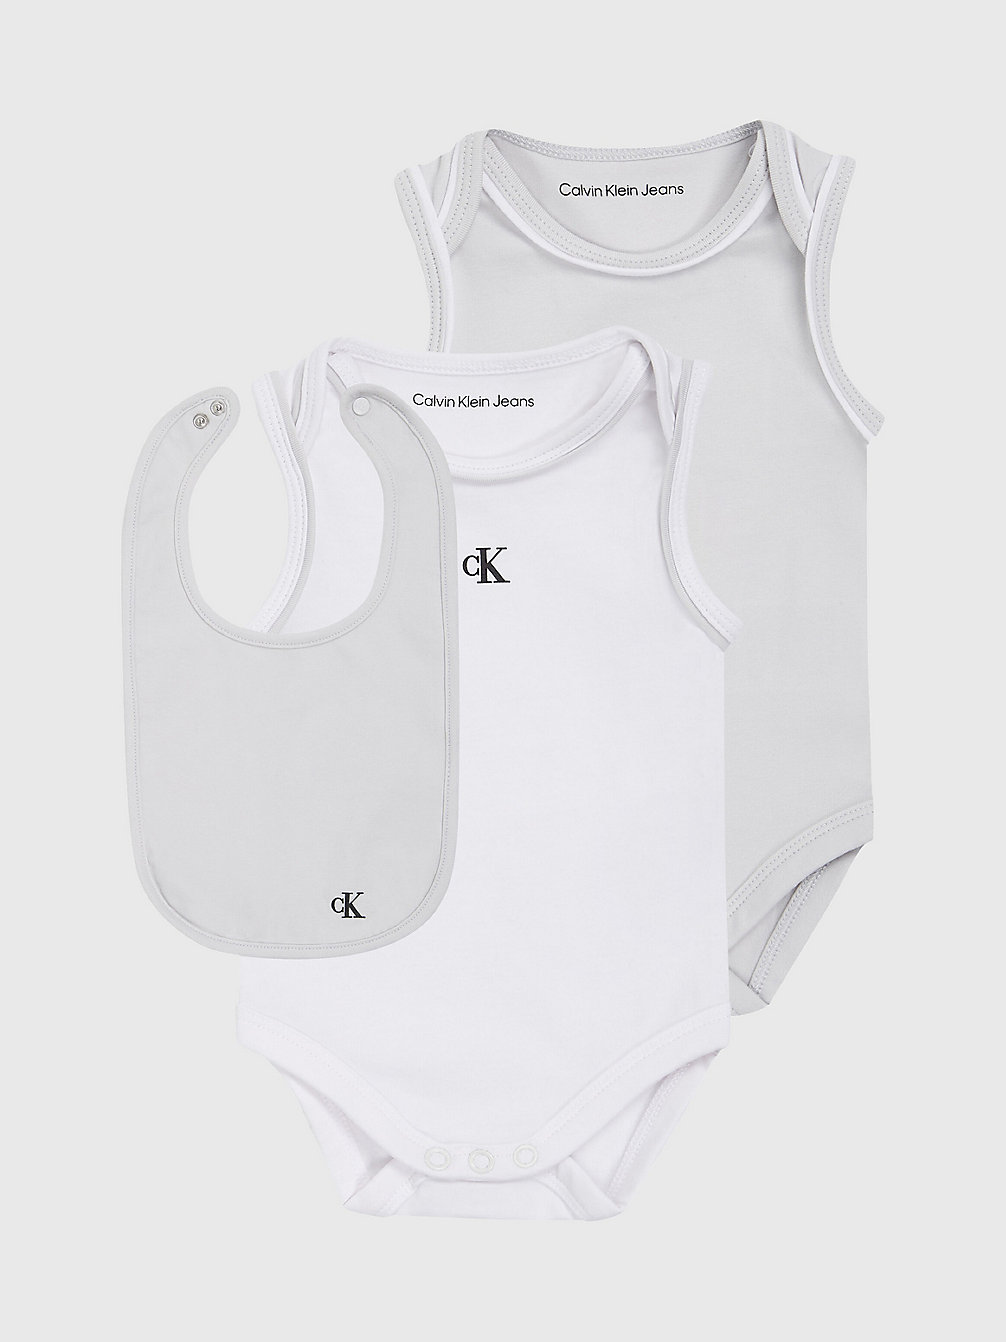 GHOST GREY / BRIGHT WHITE Baby-Geschenkset Mit Body Und Lätzchen undefined newborn Calvin Klein